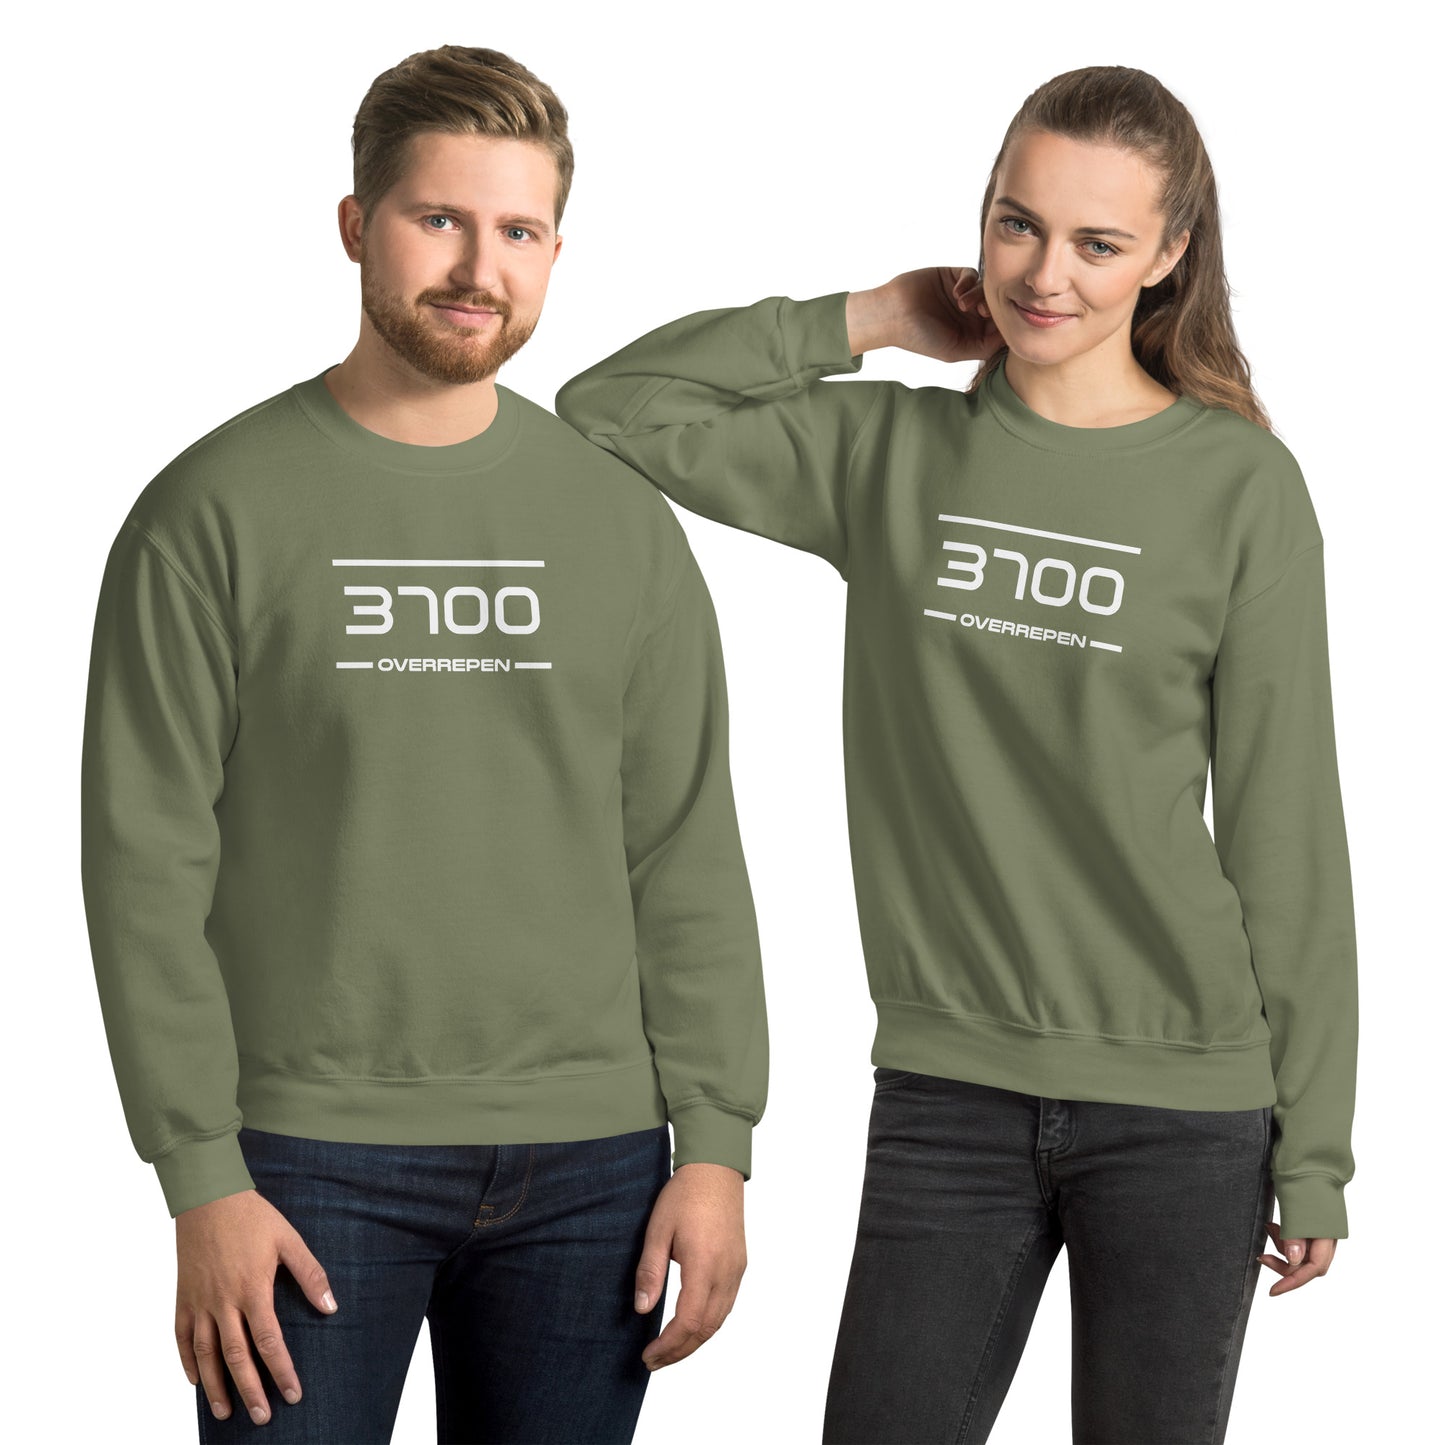 Sweater - 3700 - Overrepen (M/V)